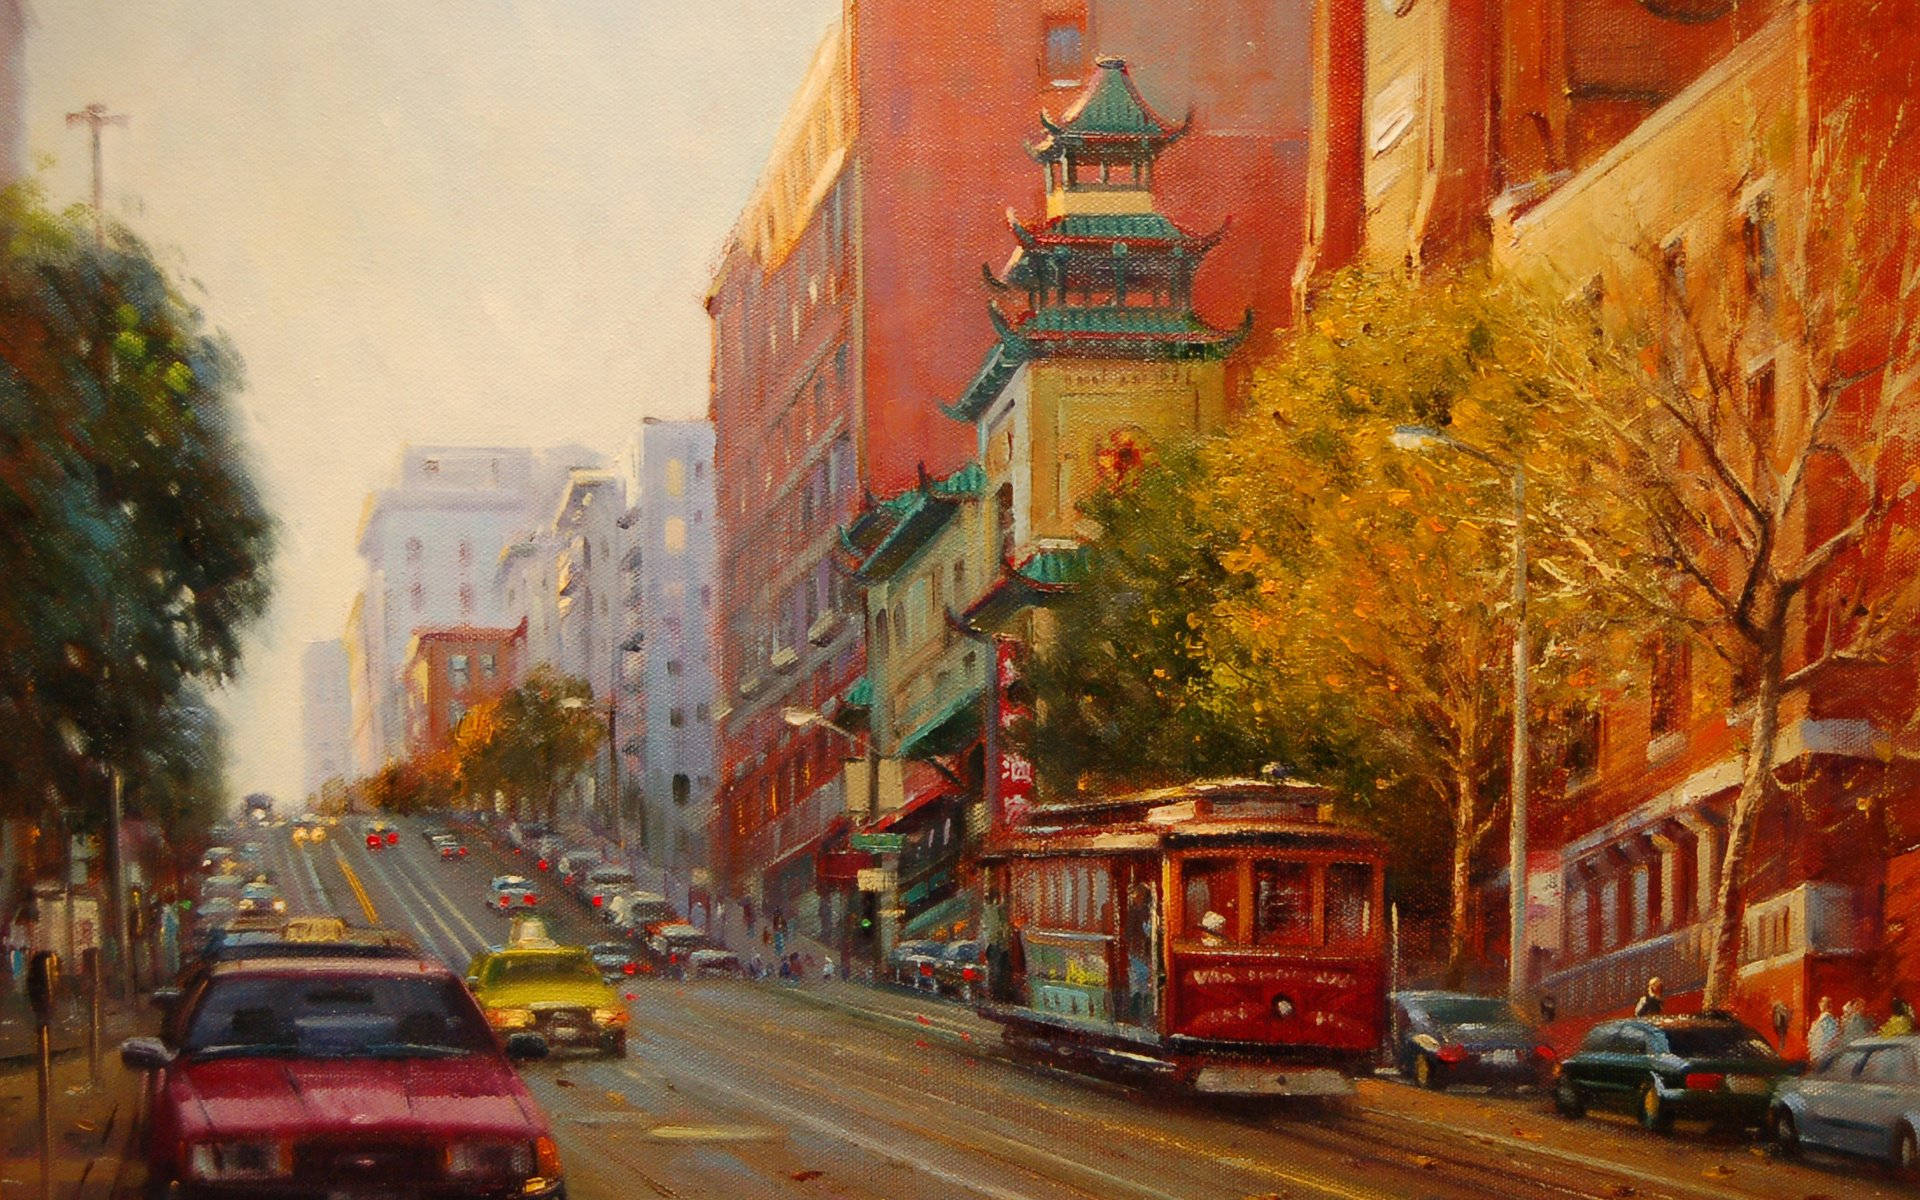 San Francisco City Road Painting Hd